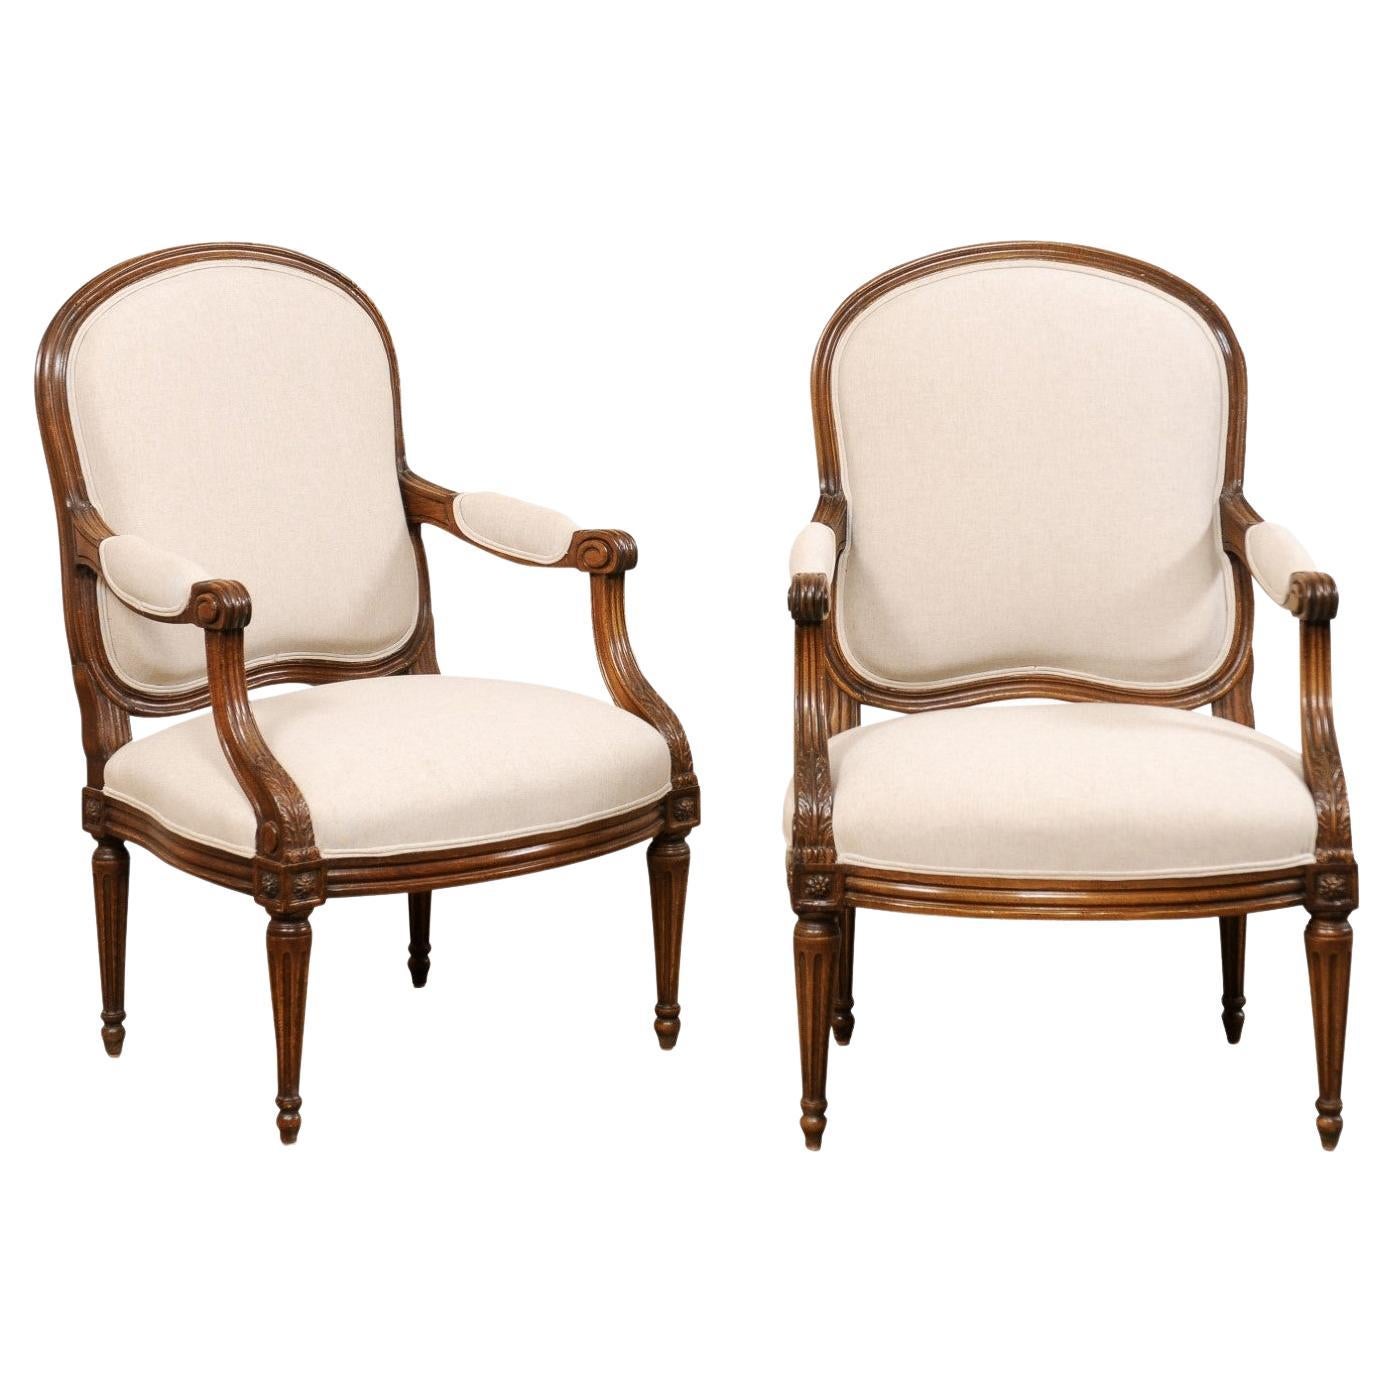 19. Jh. Französisches Paar Fauteuil-Sessel aus geschnitztem Holz, neu mit Leinen gepolstert